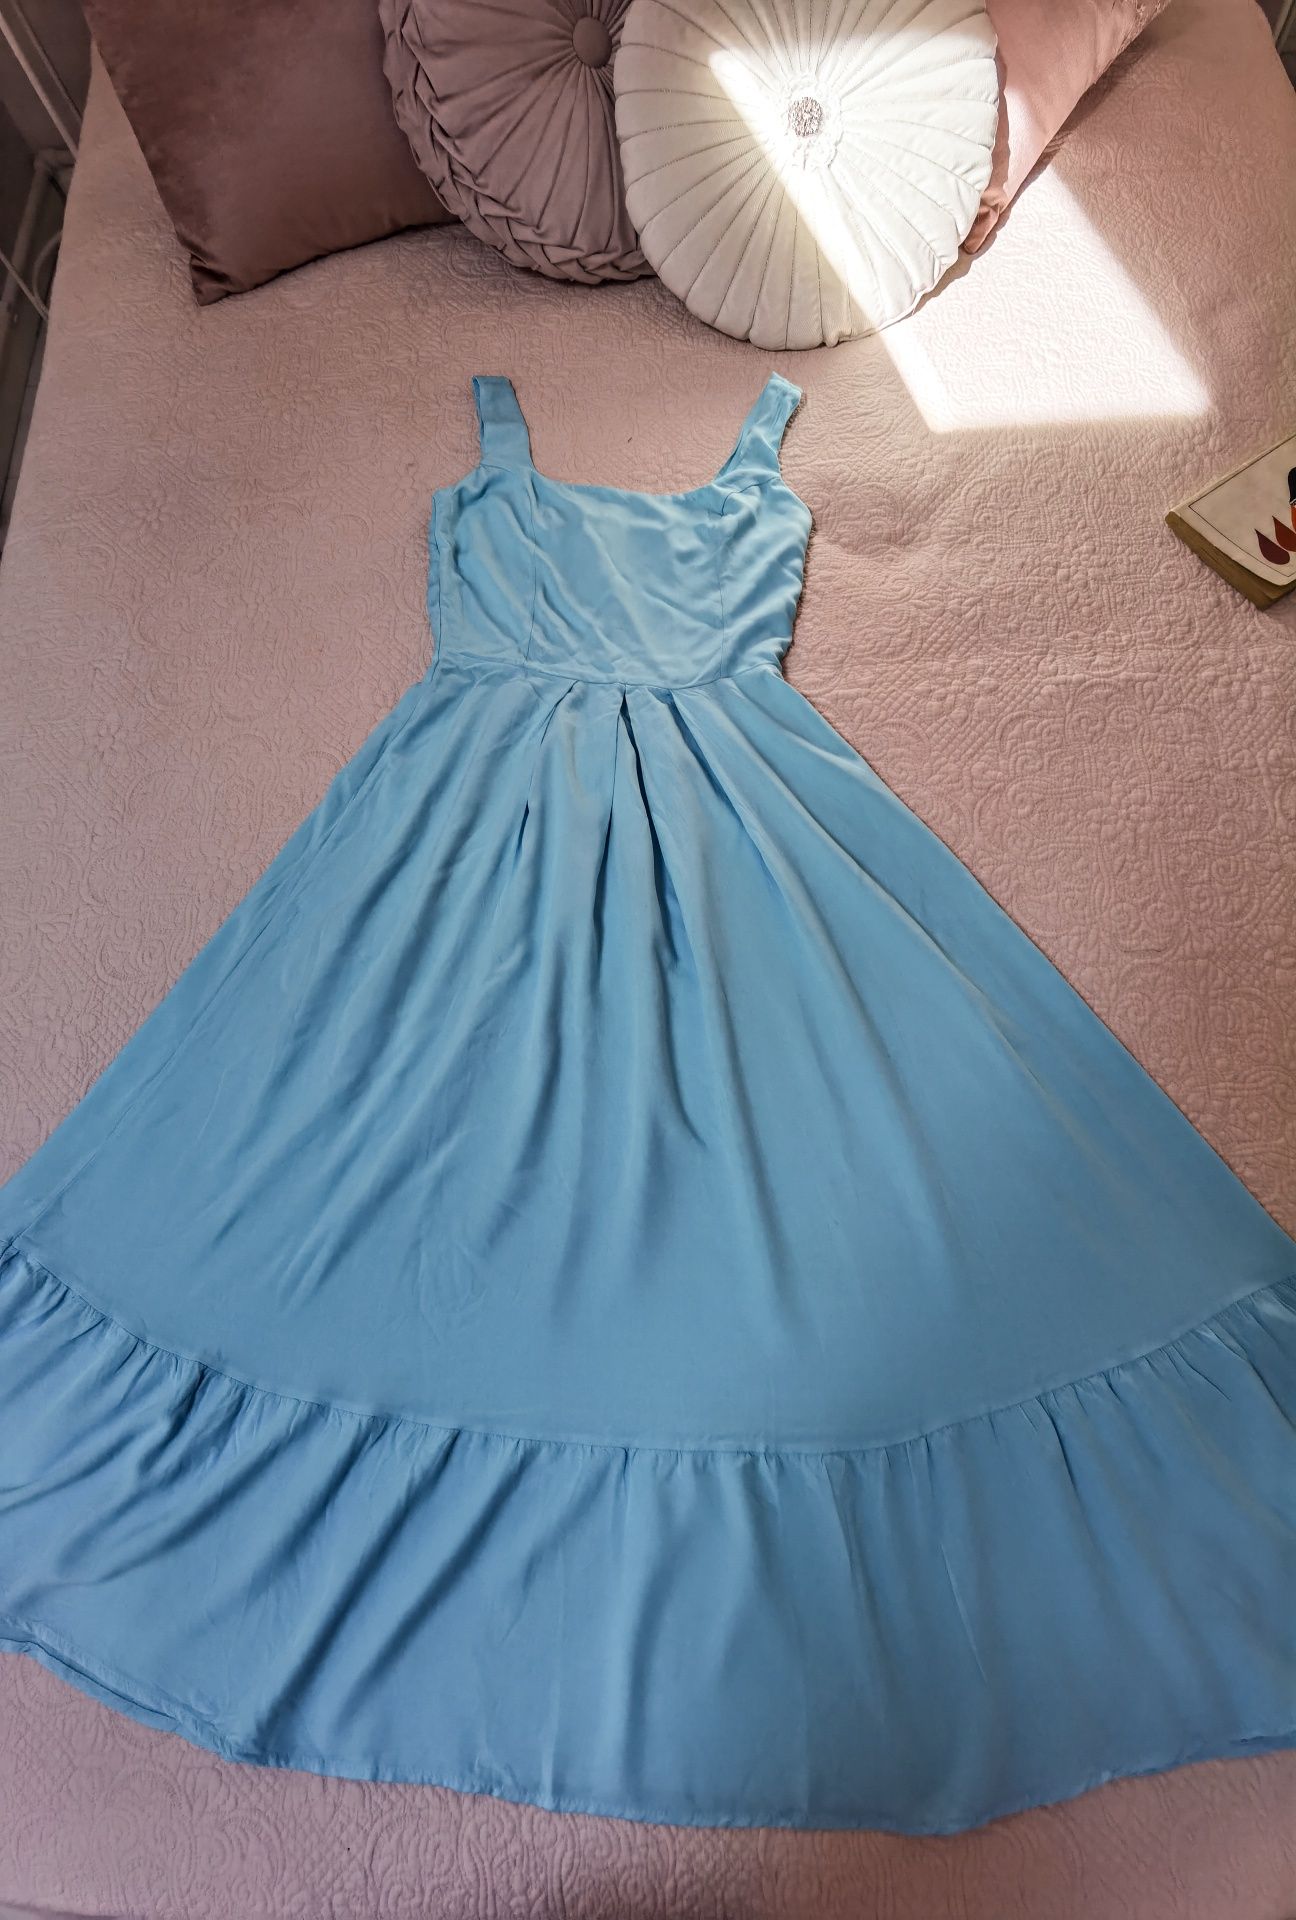 Rochie turquoise, mărimea xs-s plus cadou